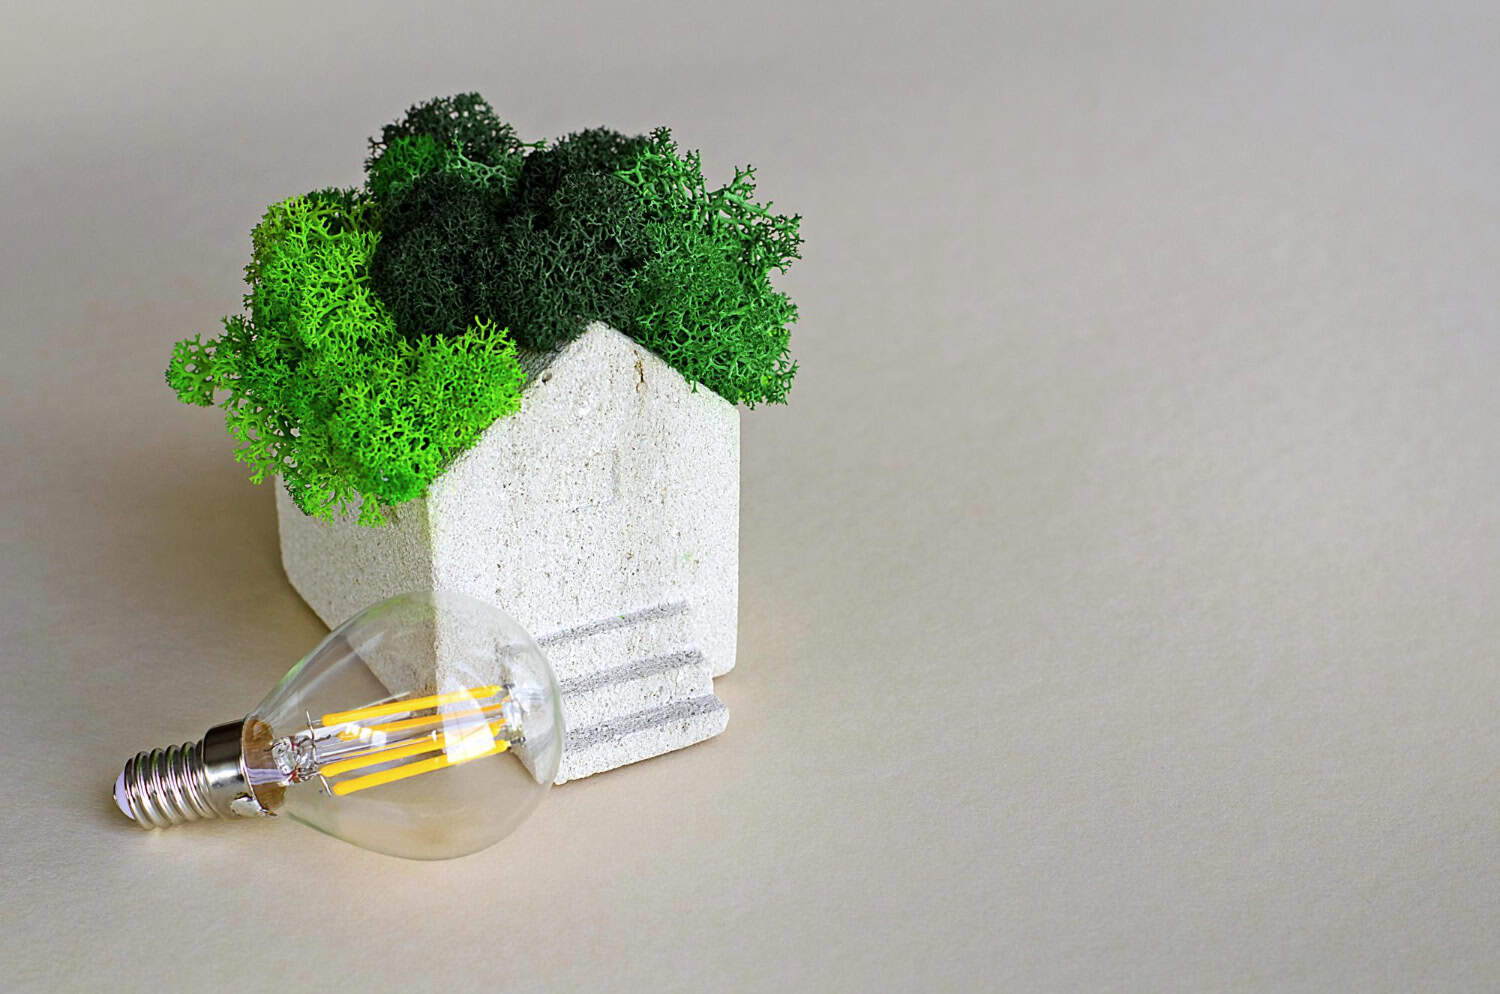 Obrazek przedstawia model eco-domu, który nawiązuje do przydomowe magazyny energii. Dzięki niemu, dom staje się energooszczędny.